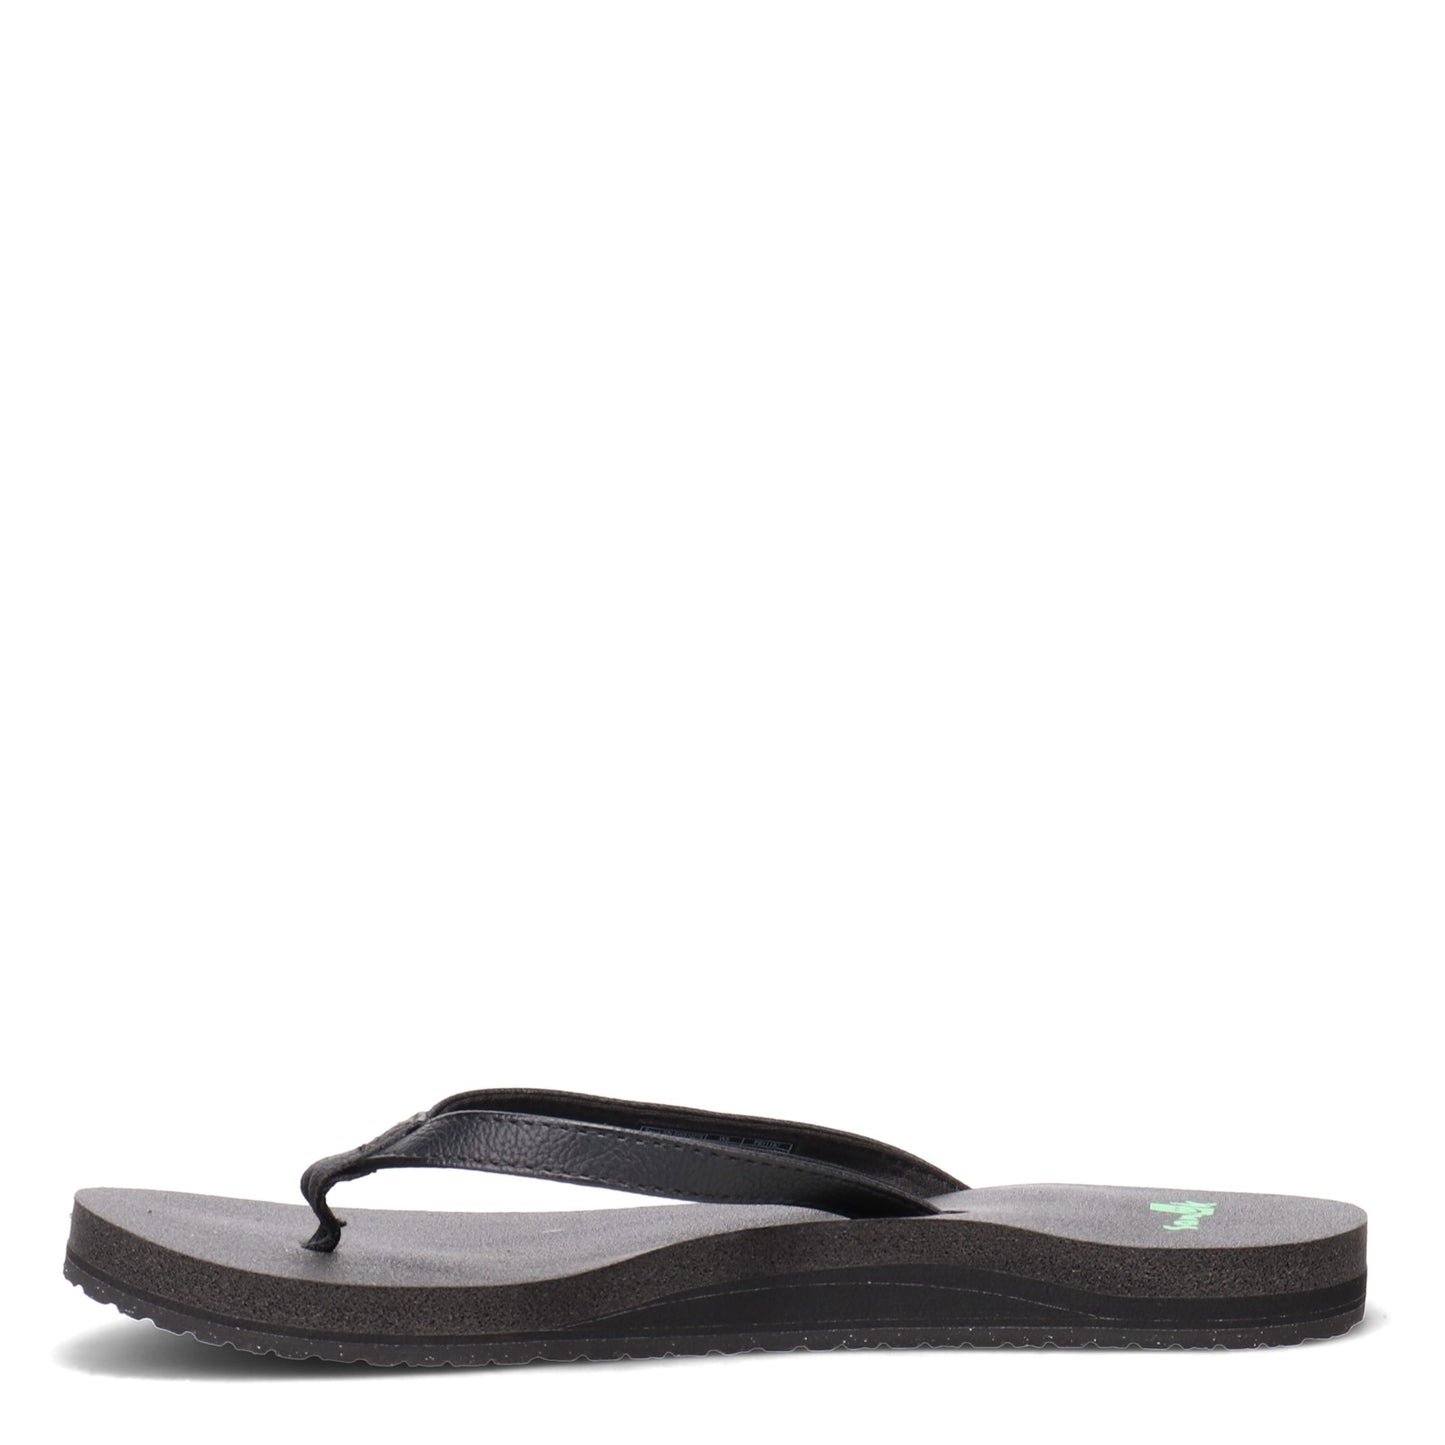 Peltz Shoes  Women's Sanuk Yoga Joy Sandal BLACK SMOOTH SWS10275-BLK